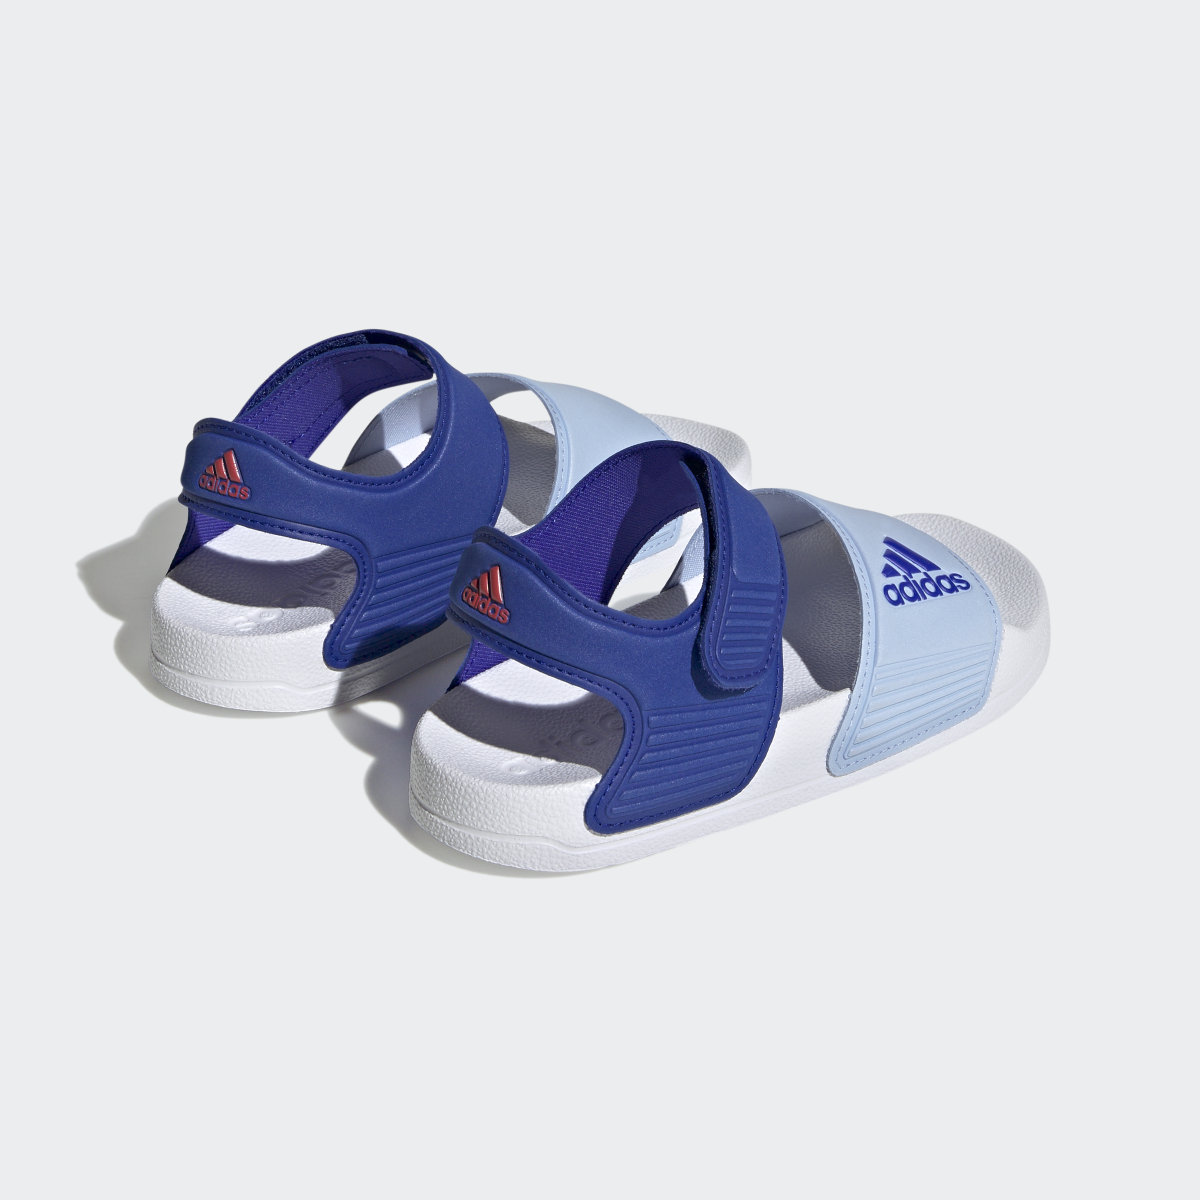 Adidas Adilette Sandals. 6